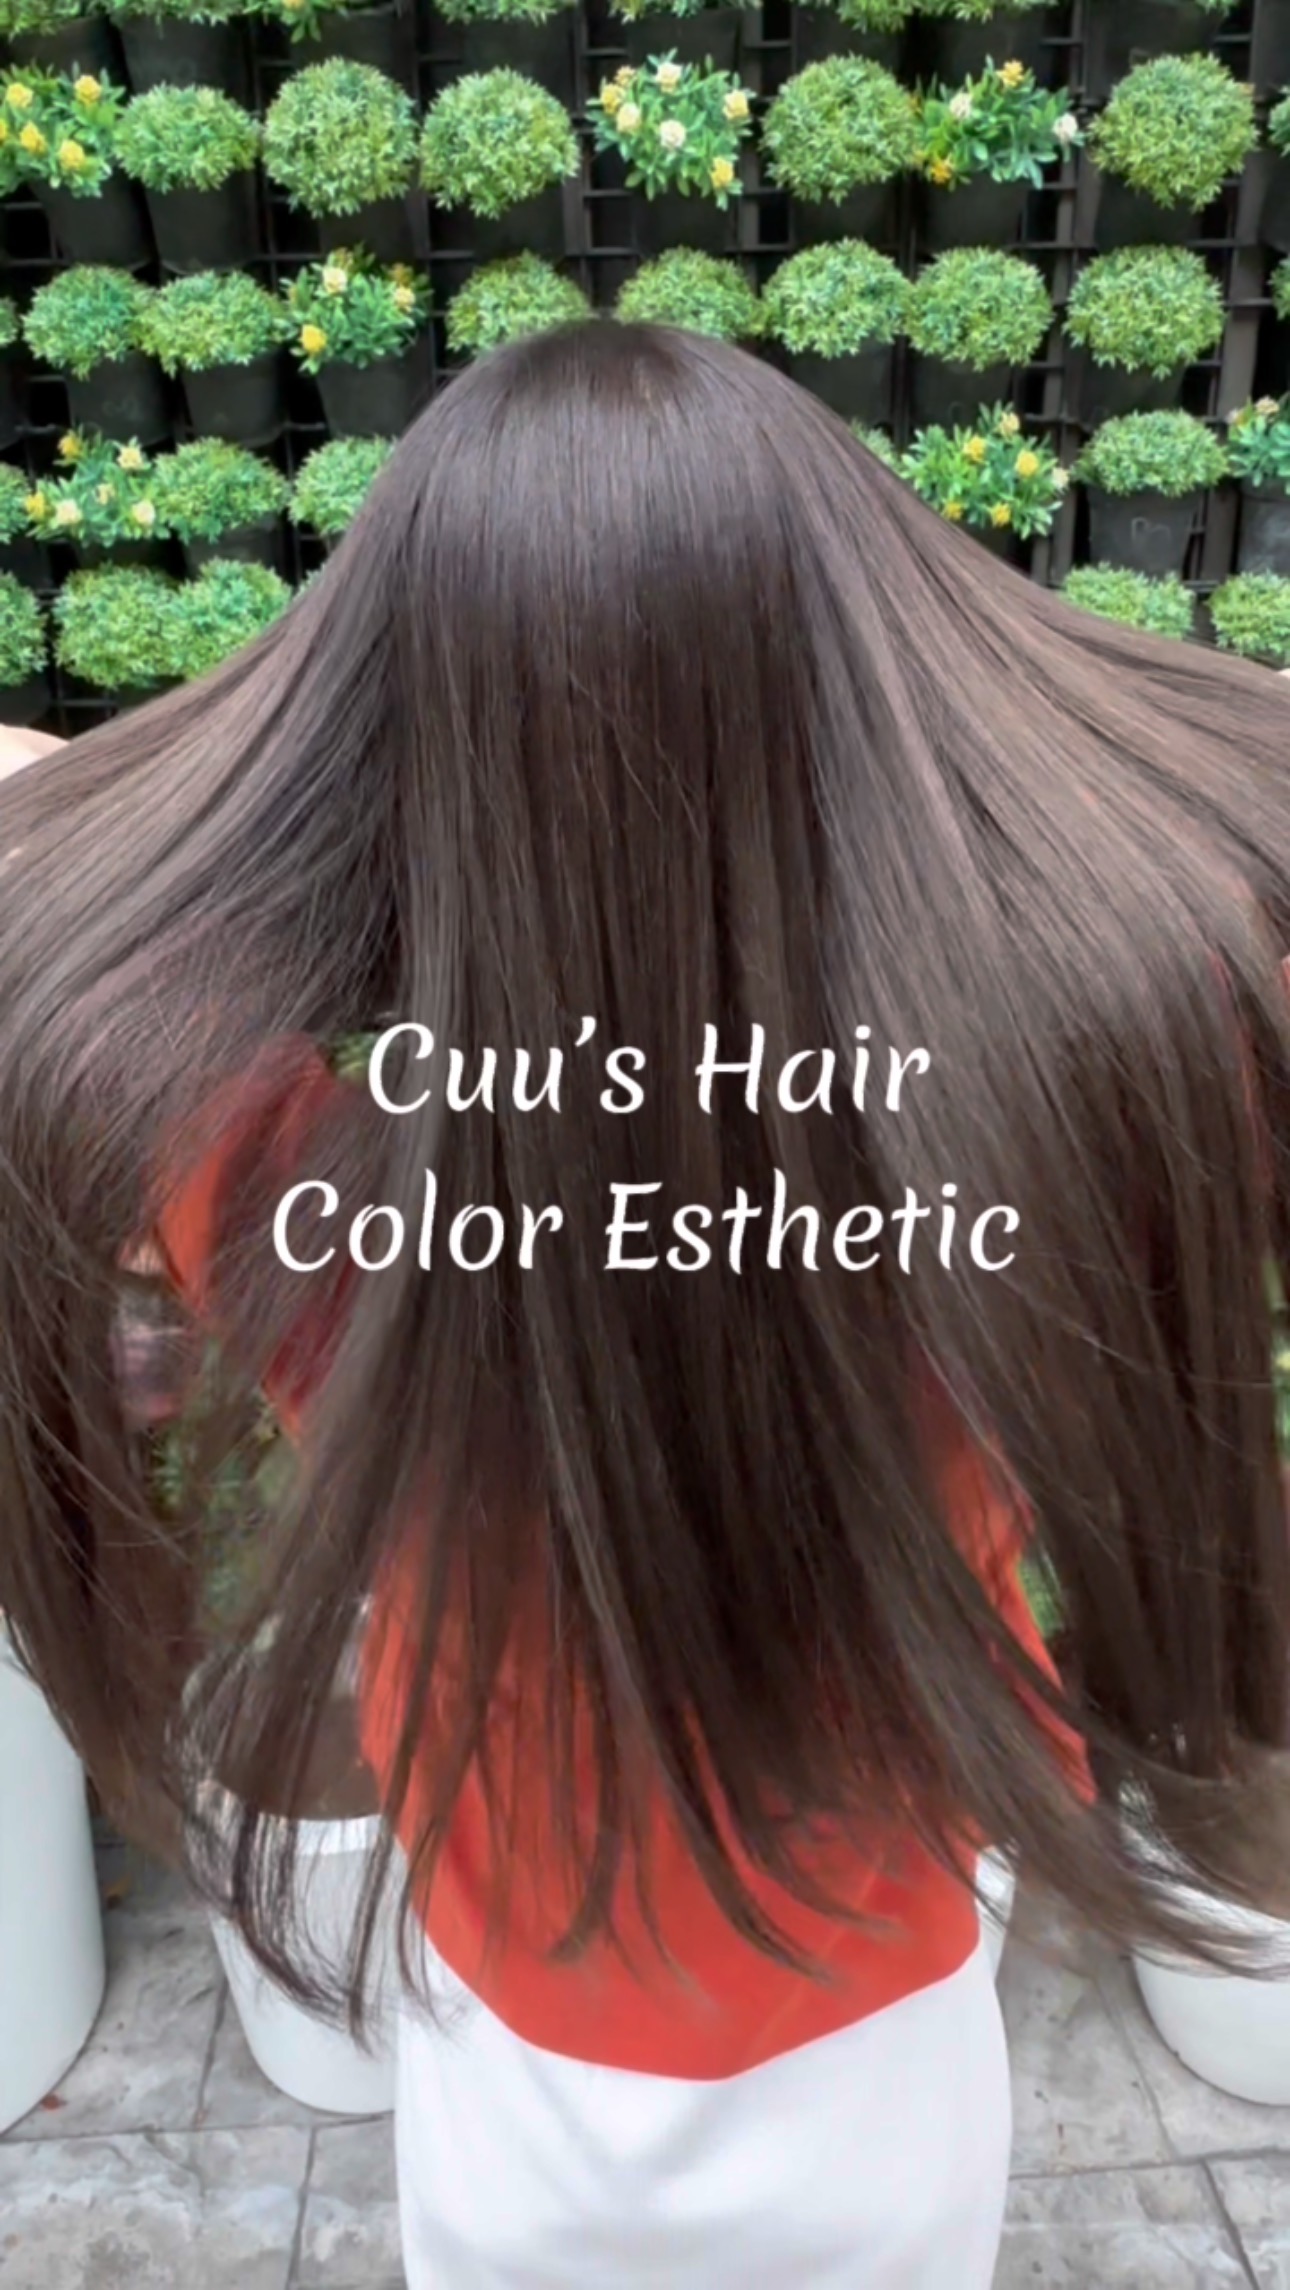 Cuu’s hair สวัสดีค่า ‍♀️
ทำสีแล้วผมสุขภาพดี ทำได้จริงมั้ย? 🤔
วันนี้แอดมินขอแนะนำการทำสีพร้อมทรีทเม้นท์ หรือที่เรียกว่า Color Esthetic ซึ่งช่วยทำให้ได้สีที่เราชื่นชอบ และติดทนนานกว่าการทำสีปกติ เพราะมีการผสมทรีทเม้นท์เข้าไปในสีที่ทำด้วย ในทรีทเม้นท์มีสารอาหารมากมายต่อสำคัญต่อเส้นผม ช่วยให้ผมของคุณสุขภาพดี มีน้ำหนัก สวยอย่างเป็นธรรมชาติได้ค่า 🥰‍♀️  Color Esthetic
7300 บาท → 5600 บาท(ราคานี้ไม่รวมฟอก) 
ตัด ,ทำสี(ได้ทุกความสั้นและความยาว),ให้คำปรึกษา, ดีท็อกซ์หนังศีรษะ,สระผม, แชมพู ,ทรีทเม้นท์, เซ็ท, เป่า,การรับประกัน (ฟรี) ปรึกษาทางไลน์ (ฟรี) + ตัดหน้าม้าหลังทำ 3 สัปดาห์  ระยะเวลาที่ใช้ : ประมาณ 3 ชั่วโมง 
หากคุณลูกค้าไม่ต้องการตัดผมจะมีส่วนลด 700 บาทครับ  ทางร้านจะใช้โปรตีนคุณภาพสูงจากธรรมชาติ เซราไมด์ คอลลาเจน กรดอะมิโน และกรดไฮยาลูโรนิกจากธรรมชาติให้กับเส้นผมเพื่อให้สารอาหารซึมซาบเข้าสู่เส้นผม เพื่อป้องกันไม่ให้สารอาหารและน้ำที่หล่อเลี้ยงหลุดออกมา พร้อมทั้งยังเติมส่วนผสมที่ให้ความชุ่มชื้นตามธรรมชาติจากกับเส้นผมและหนังศีรษะ ฉะนั้นสภาวะแวดล้อมต่างๆจึงไม่ทำให้เกิดความเครียดกับเส้นผมและหนังศีรษะหลังทำ 
จะช่วยซ่อมแซมเส้นผมที่เสีย กลับมามีผมที่แข็งแรงมากขึ้น ลดการชี้ฟูของเส้นผมให้ผมให้ดูสวยงามมากขึ้น ไม่ใช่เป็นการแค่บำรุงเส้นผมแต่ยังช่วยบำรุงหนังศรีษะ ป้องกันผมขาดหลุดร่วงอีกด้วยนะครับ🥰  โปรโมชั่นHair Esthetic
Treatment Esthetic 4900THB → 4300THB
Color Esthetic 7300 บาท → 5600 บาท(ราคานี้ไม่รวมฟอก) 
Perm Esthetic 8400 บาท → 6900 บาท
Straight  Esthetic 10500 บาท → 7400 บาท  IG:cuushair
Facebook:Cuu’s hair
HP: https://cuushair.com
TEL:02-065-0909  #bangkok #thonglor #bangkokhairsalon #ผม #เกาหลี #ญี่ปุ่น #ม้วนผม #ร้านเสริมสวย #ดัดผม #เสริมสวย #ทรงผม #สไตล์เกาหลี #สไตล์ญี่ปุ่น #hairesthetic #organic